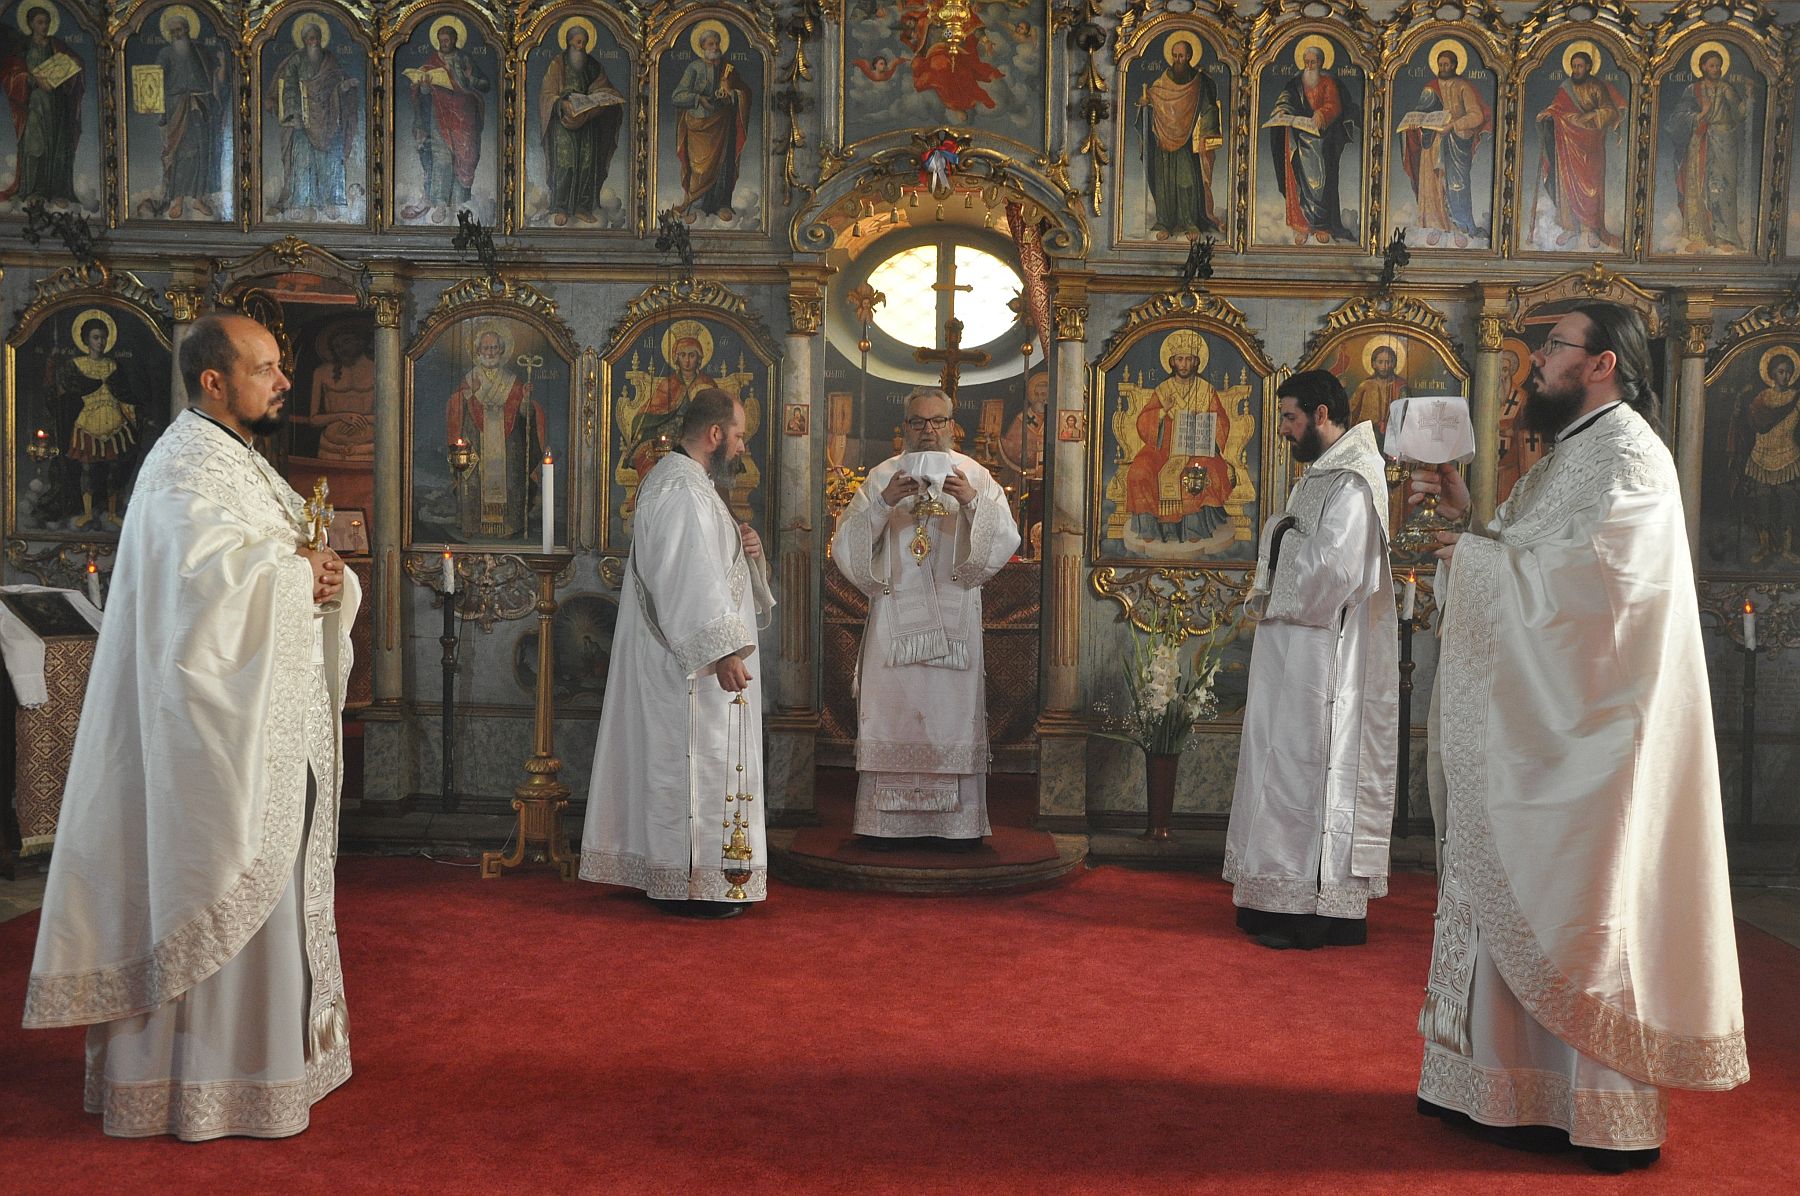 Püspöki liturgia és Szent Iván-napi búcsú a Rác utcai templomban